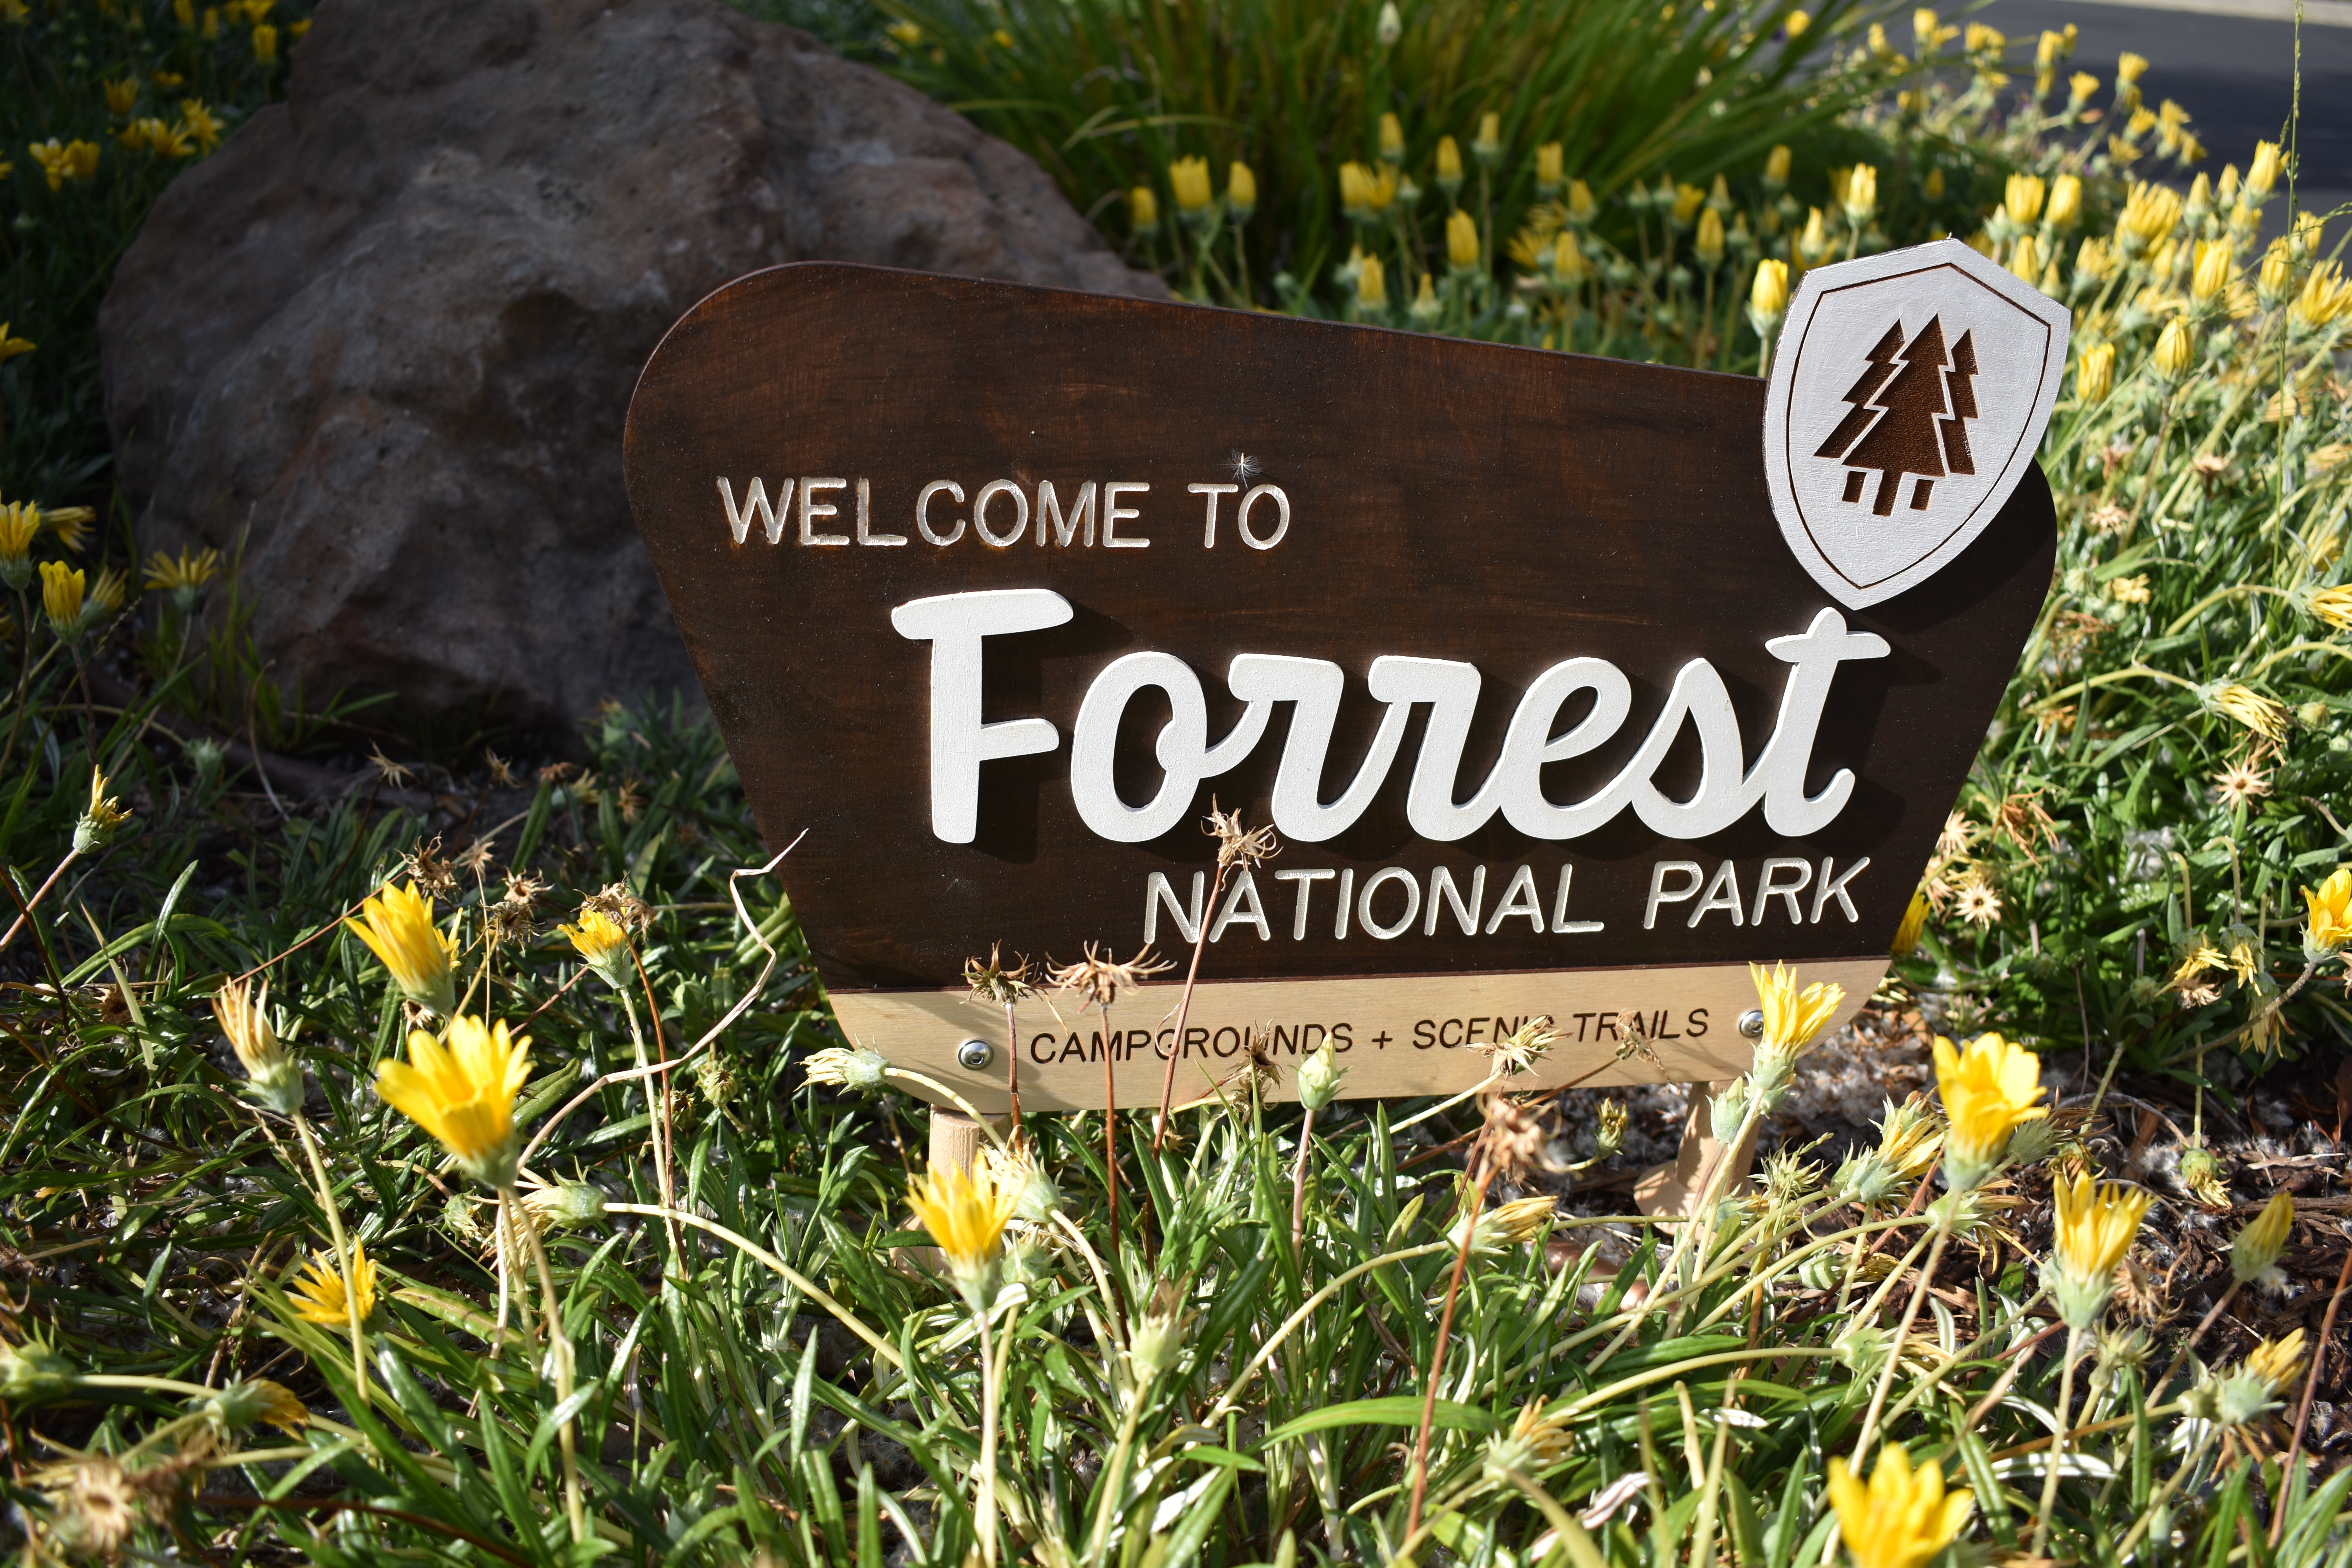 "Forrest" National Park sign